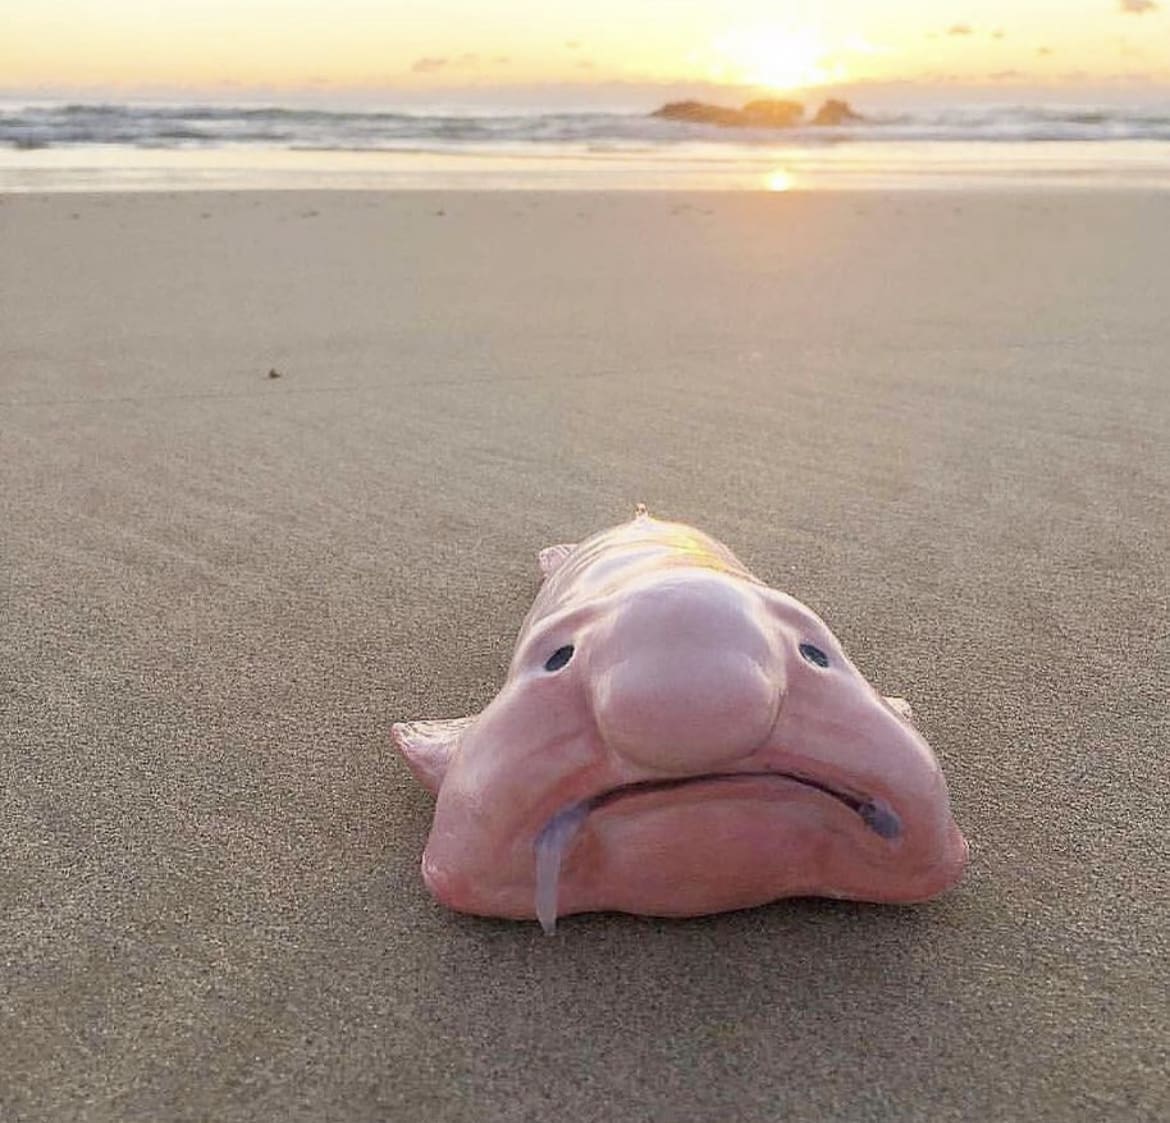 Blobfish: The Underwater Sad Sack